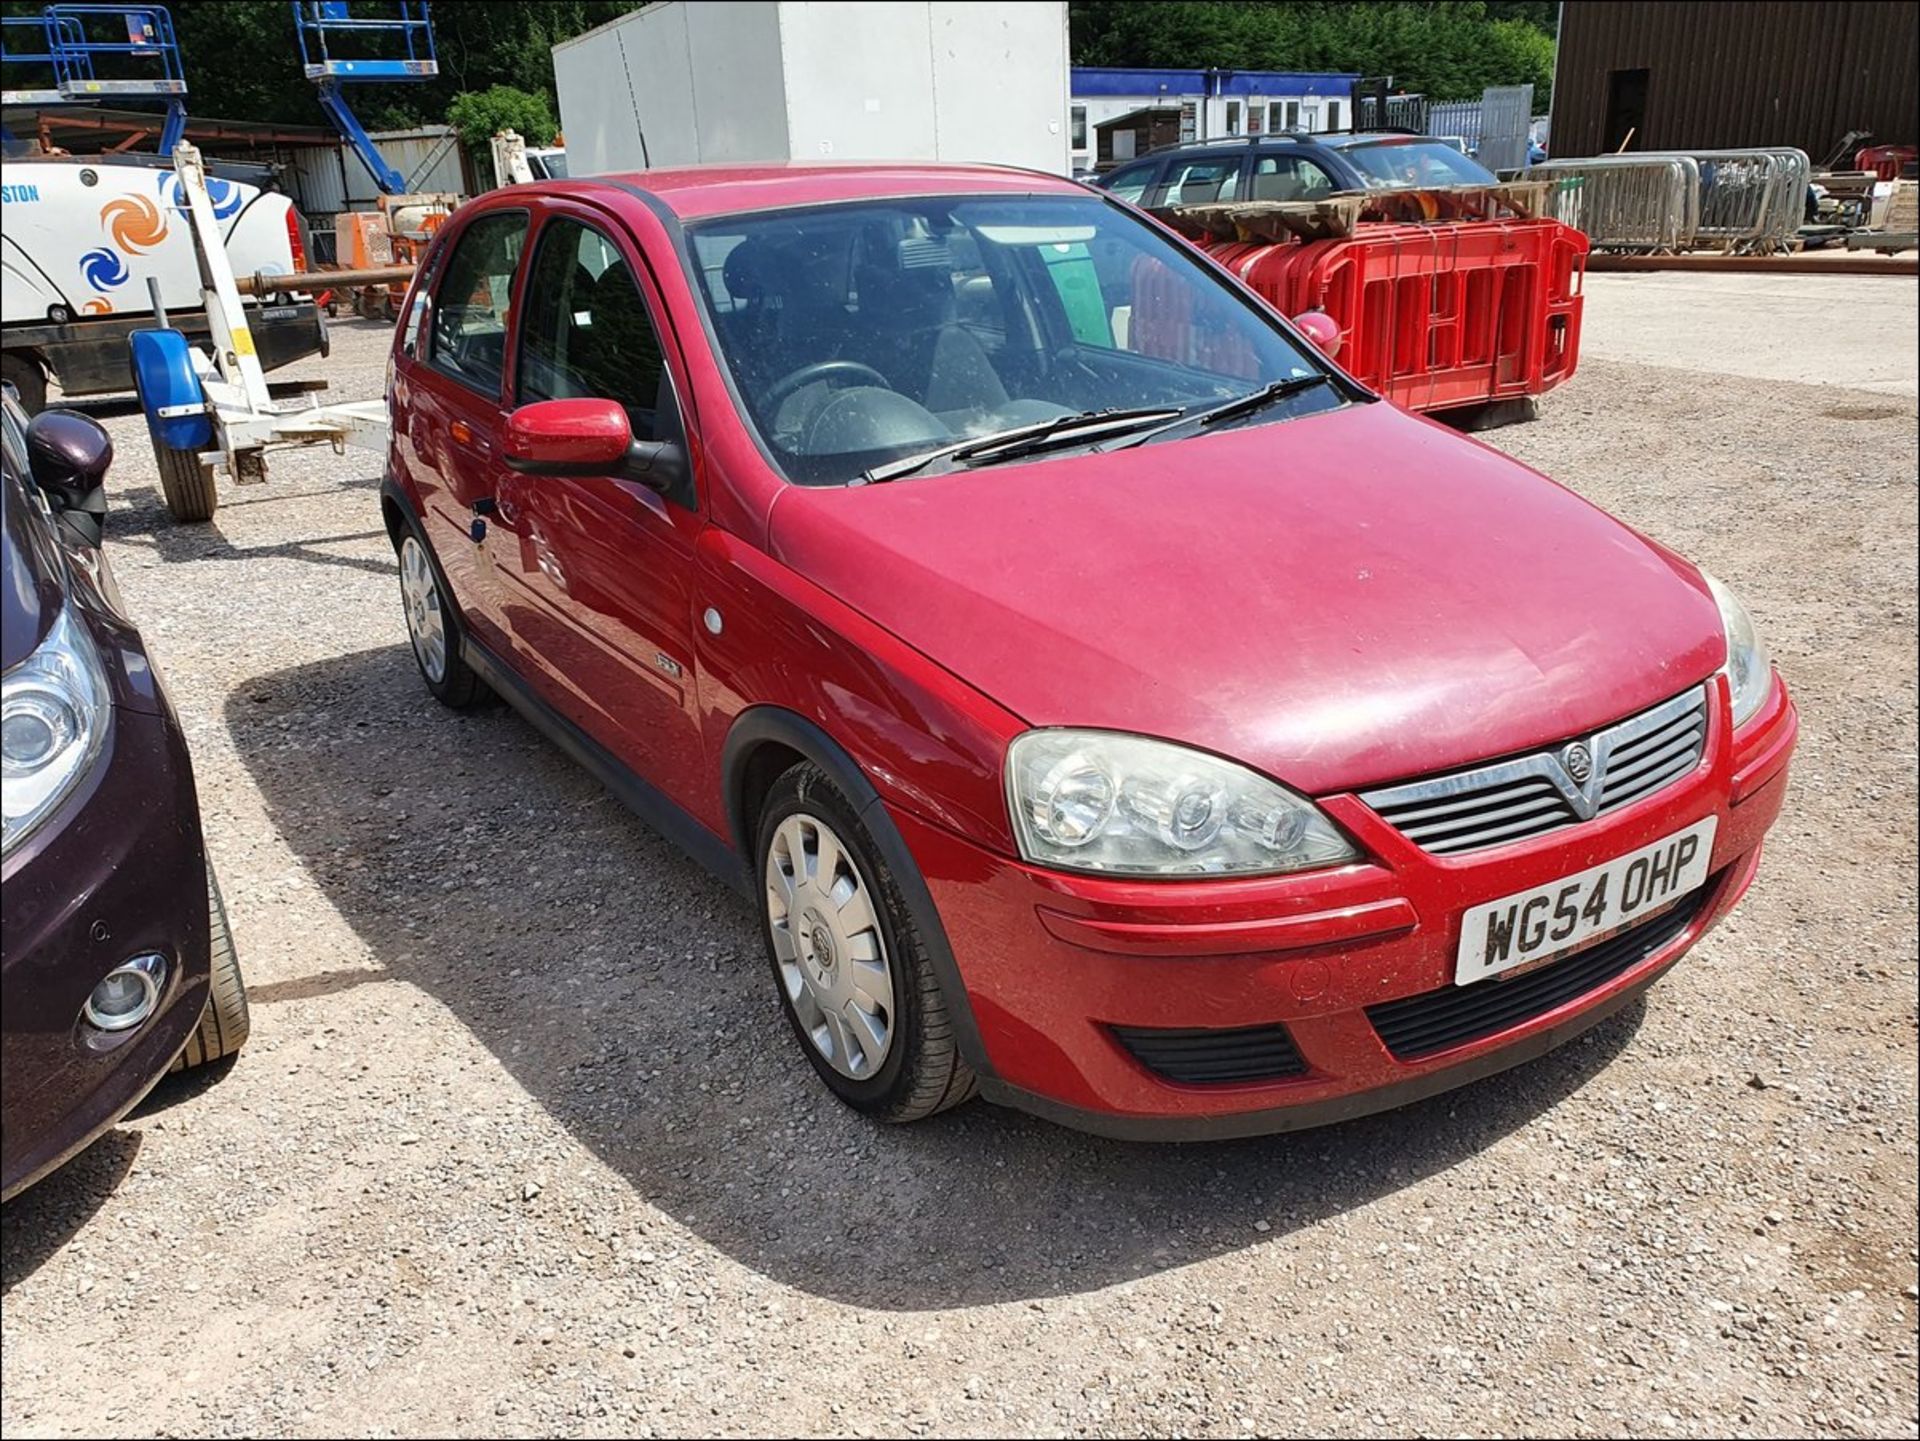 04/54 Vauxhall Corsa Design 16V Twinport - 1364cc 5dr Hatchback (Red, 56k) - Image 2 of 11